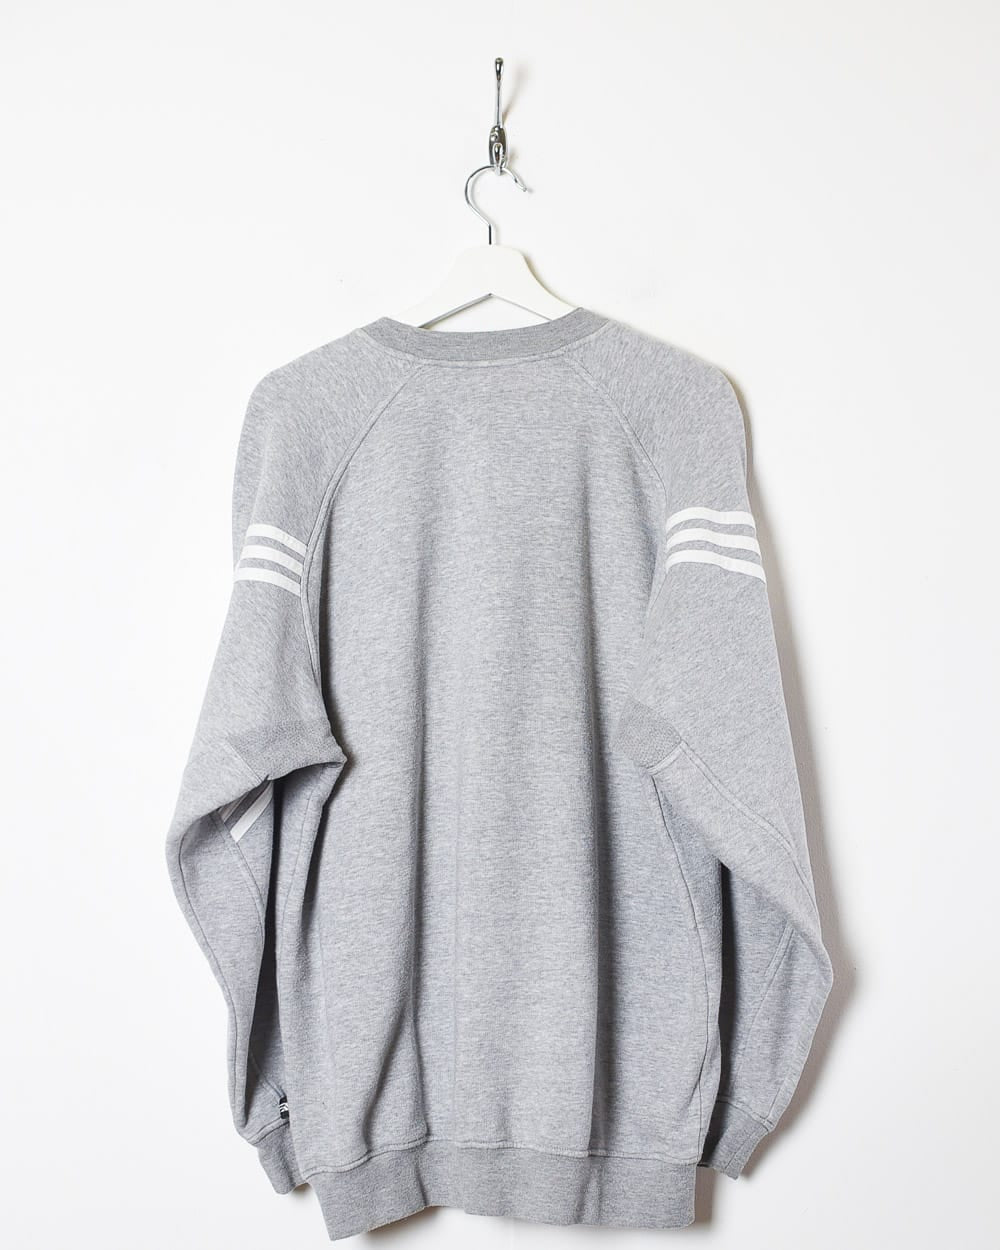 Stone Adidas Sweatshirt - Large